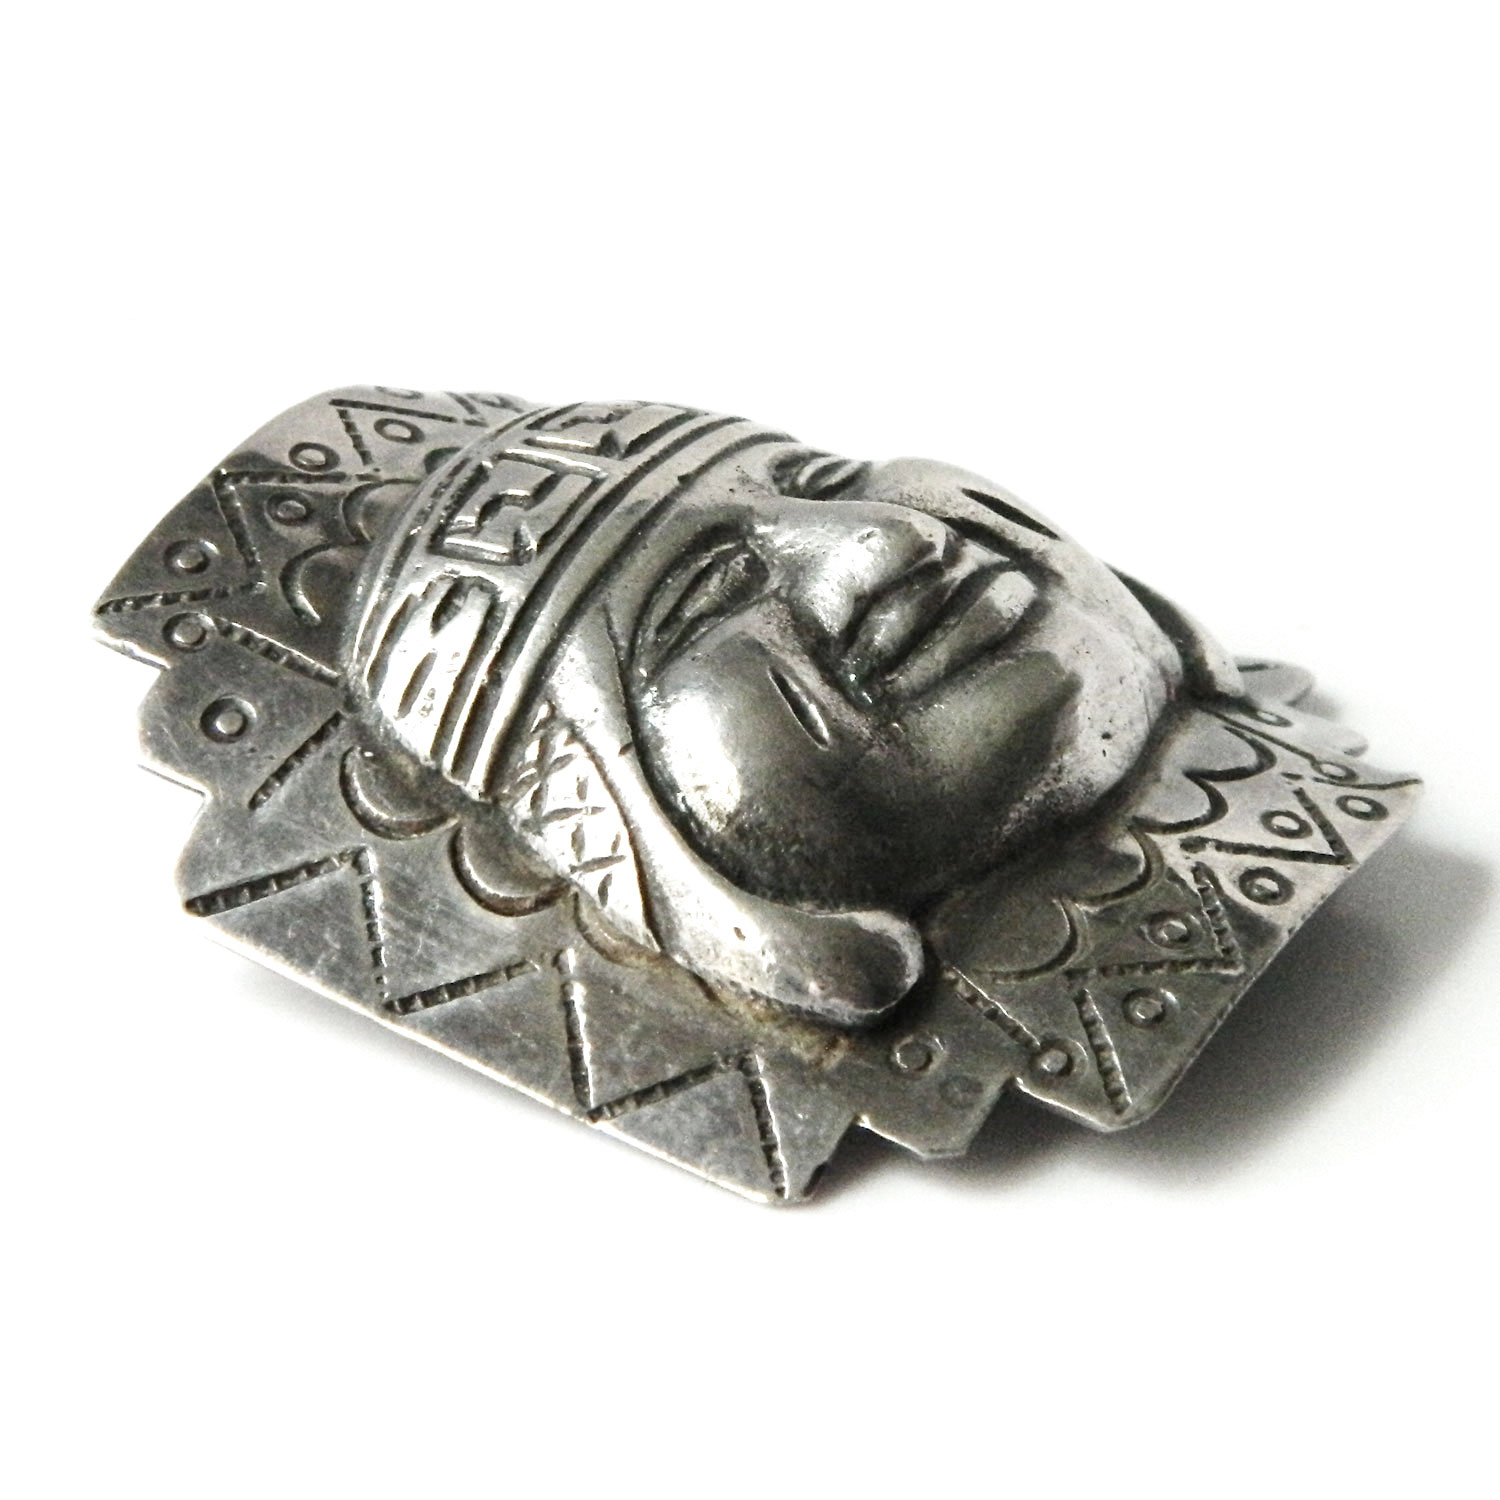 Vintage Peru silver brooch